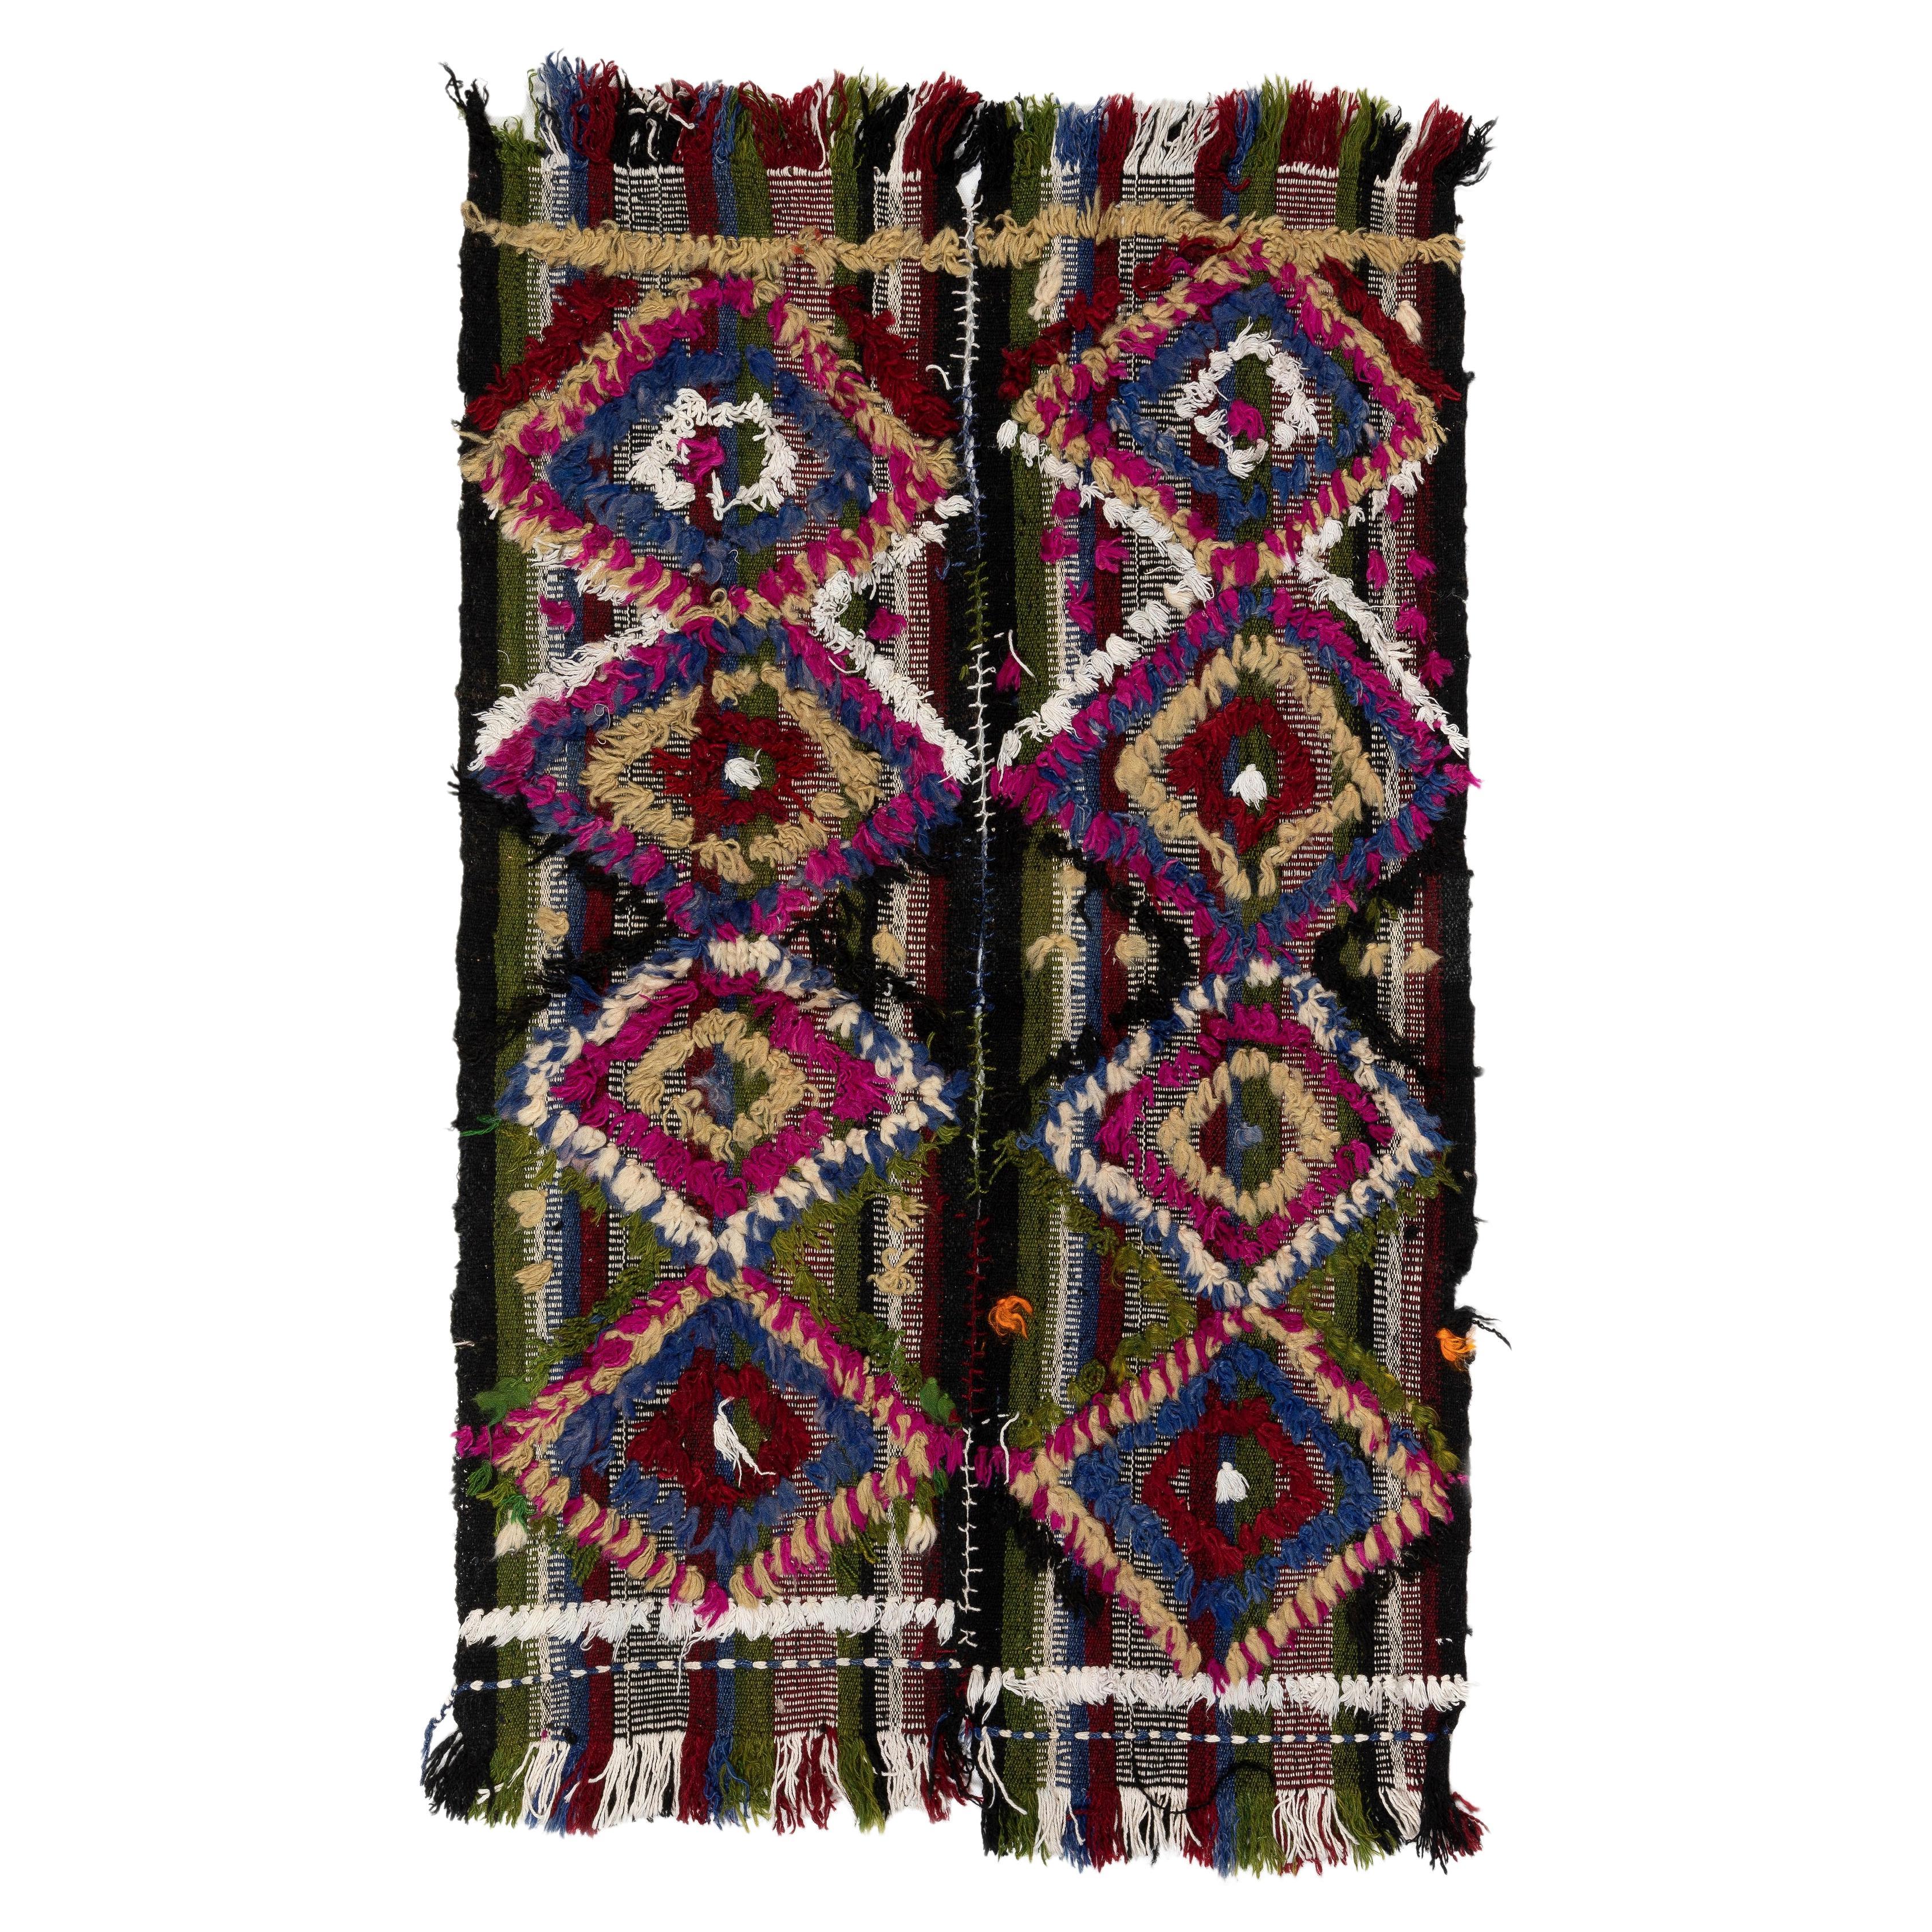 3x3.8 Ft Handgefertigter anatolischer Kelim-Teppich mit bunten Poms, großartig für das Kinderzimmer